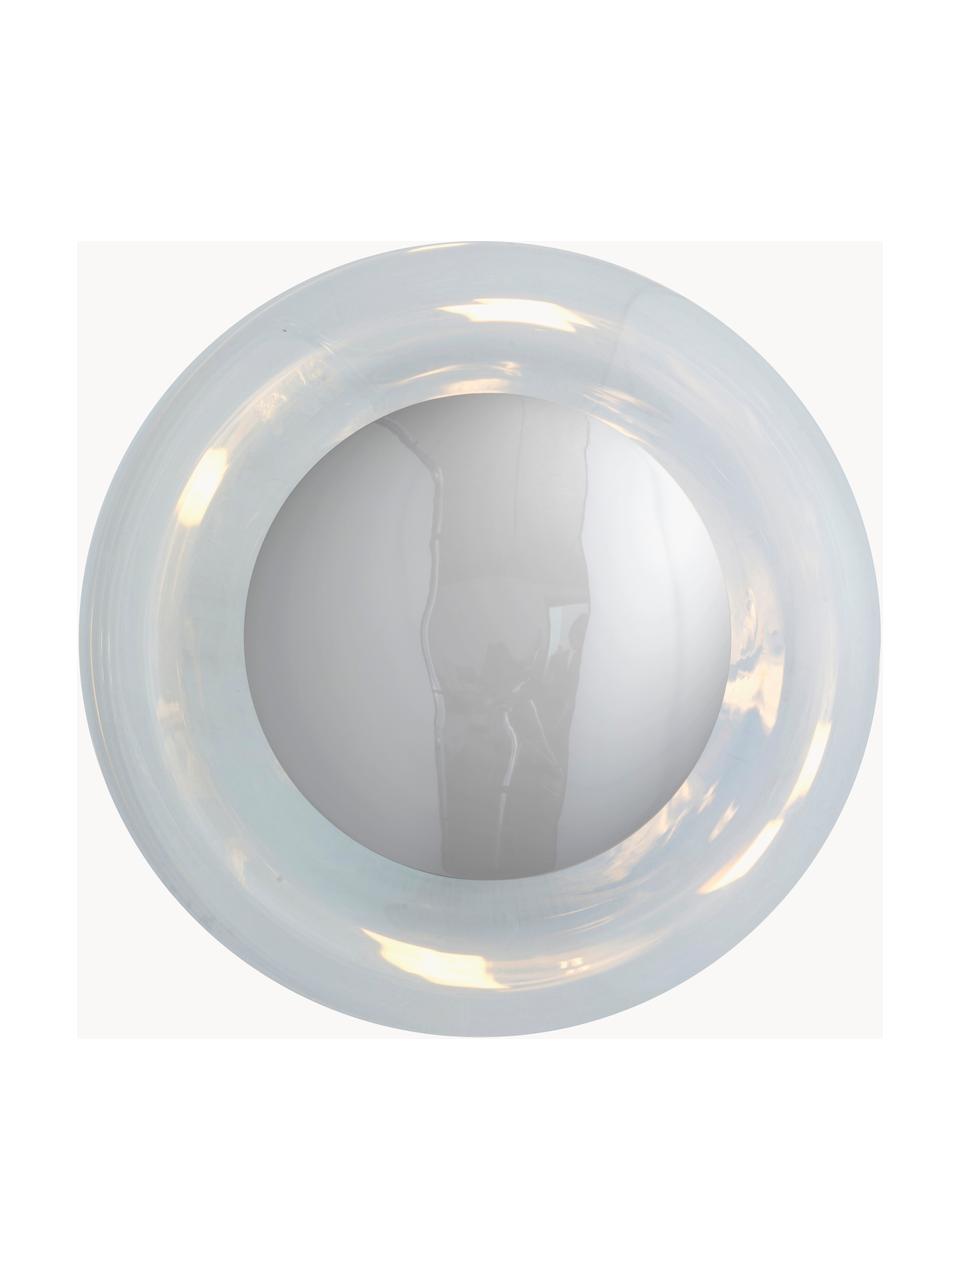 Ručně foukané nástěnné svítidlo Horizon, Transparentní, stříbrná, Ø 21 cm, V 17 cm